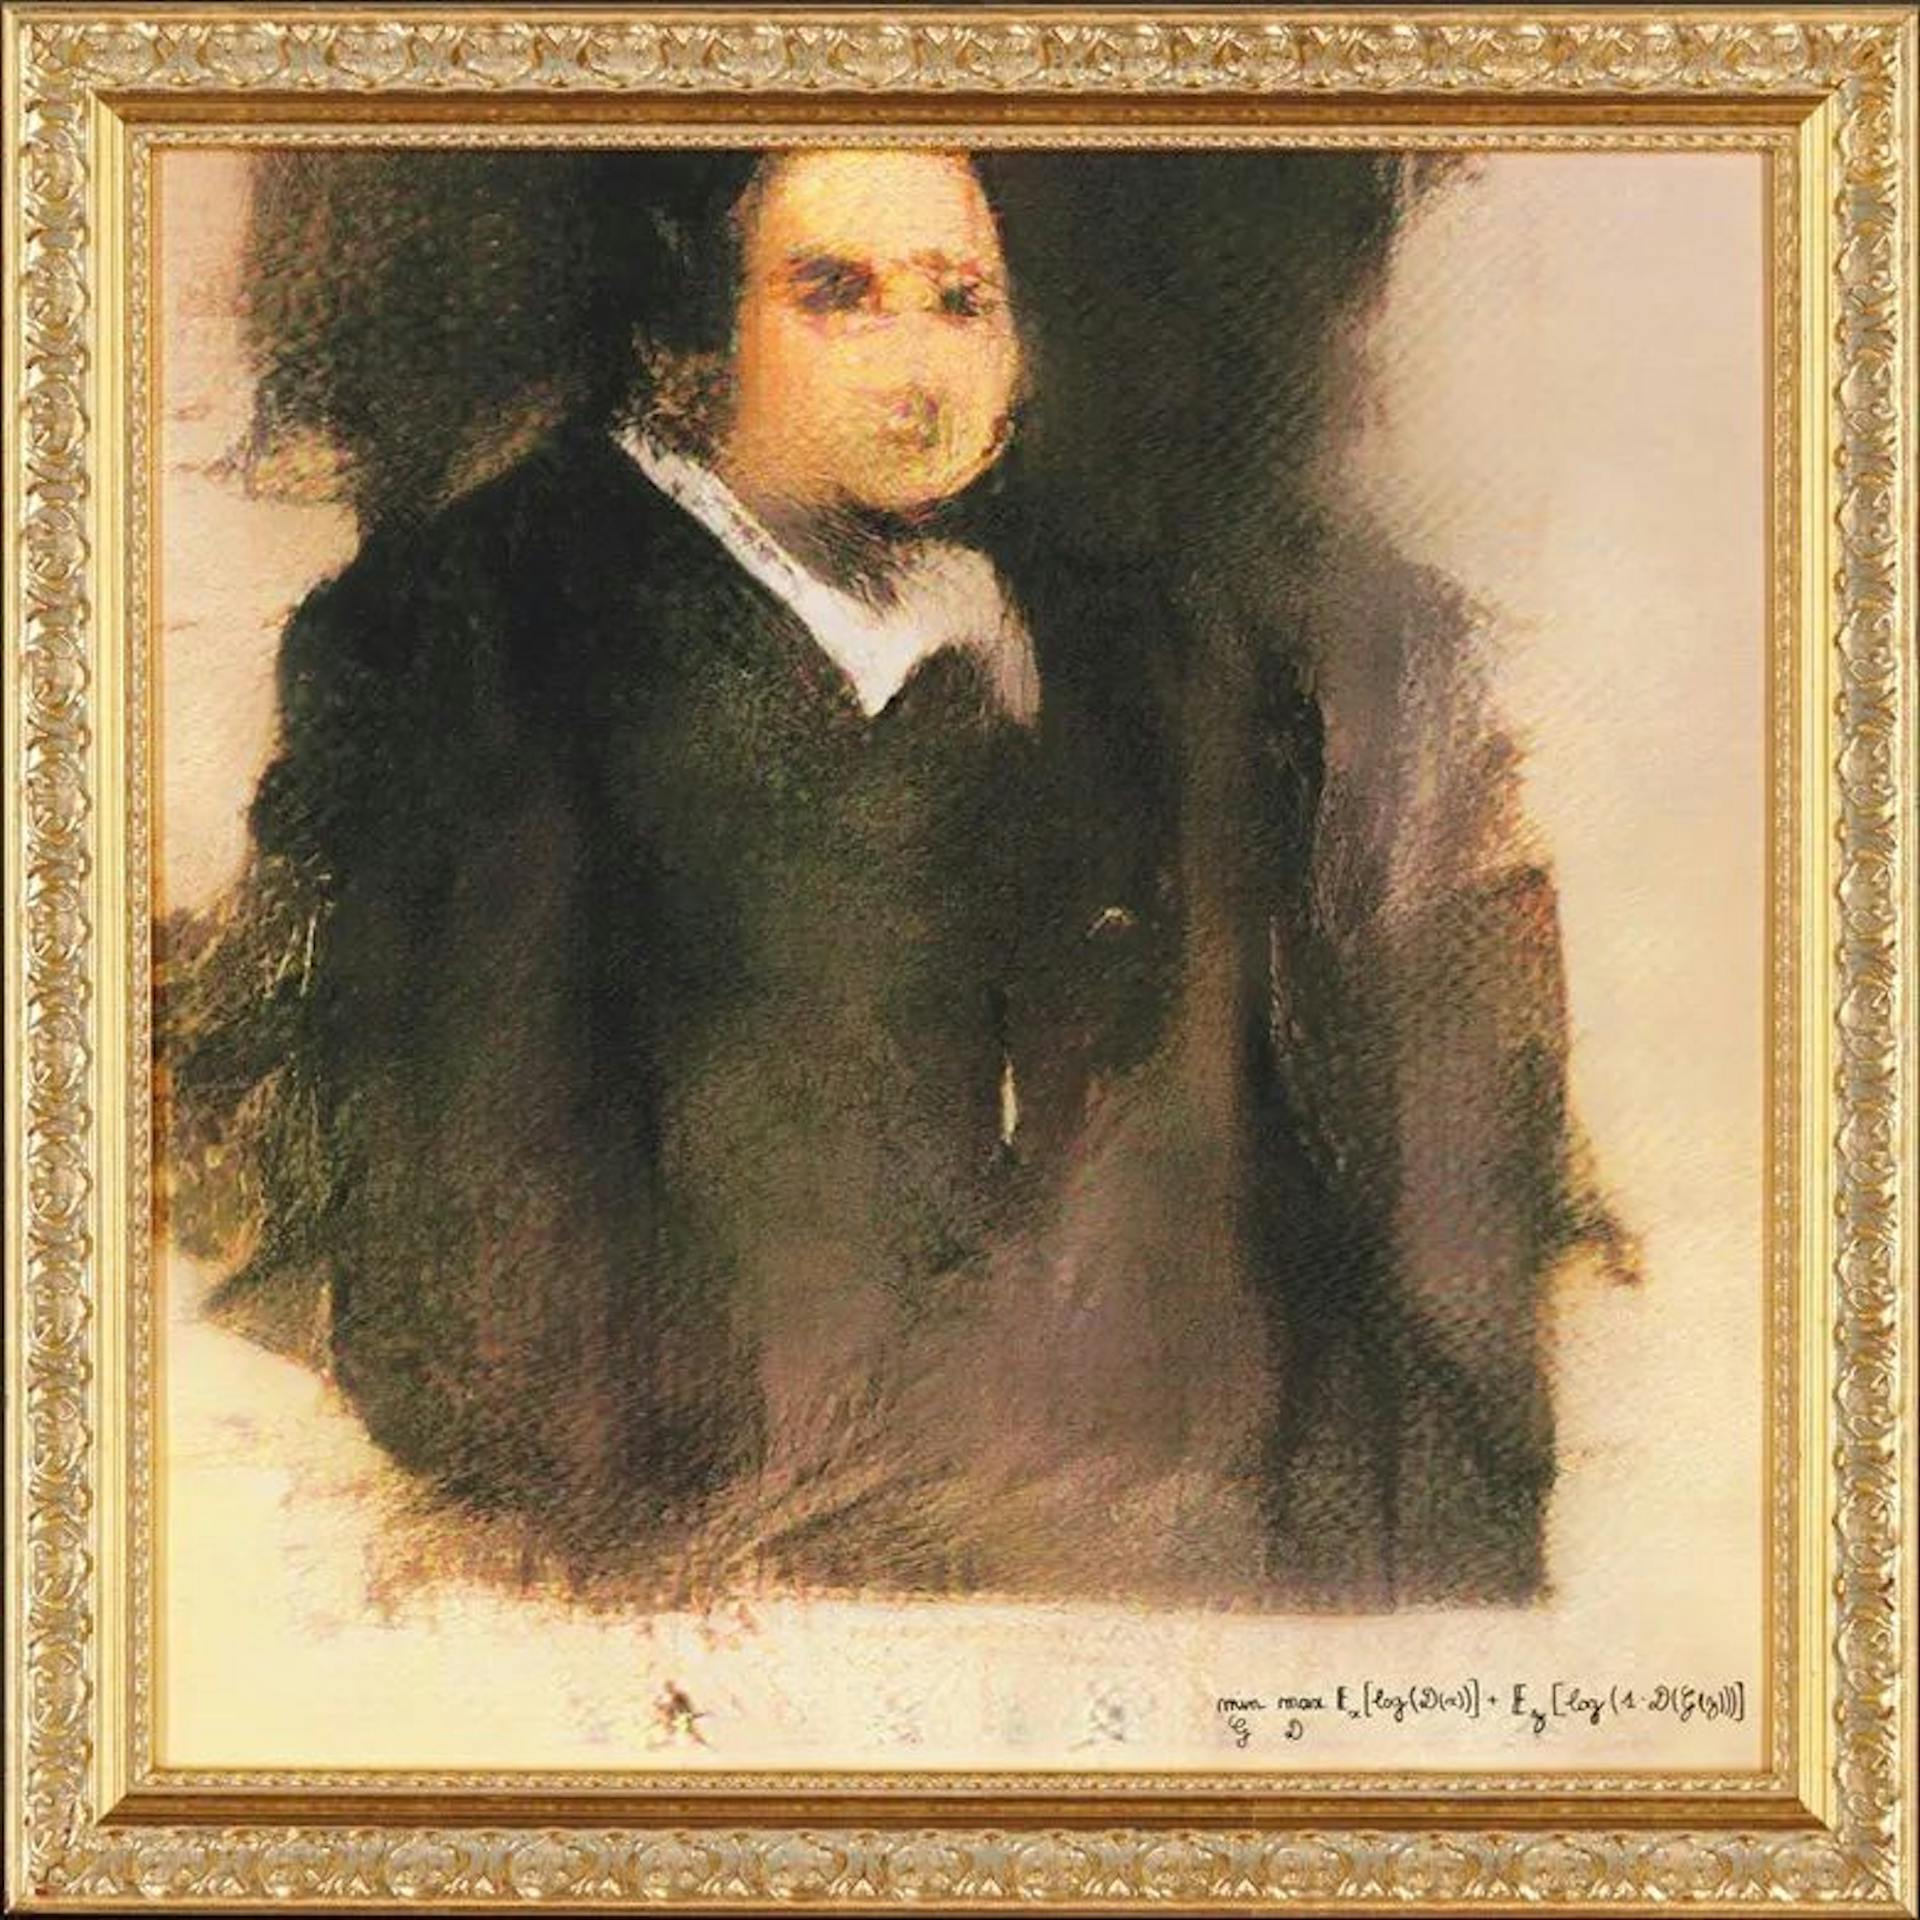 Retrato de Edmond de Belamy, o primeiro retrato de IA vendido pela Christie's por US$ 432.500. Quem recebe o crédito? Homem ou máquina?